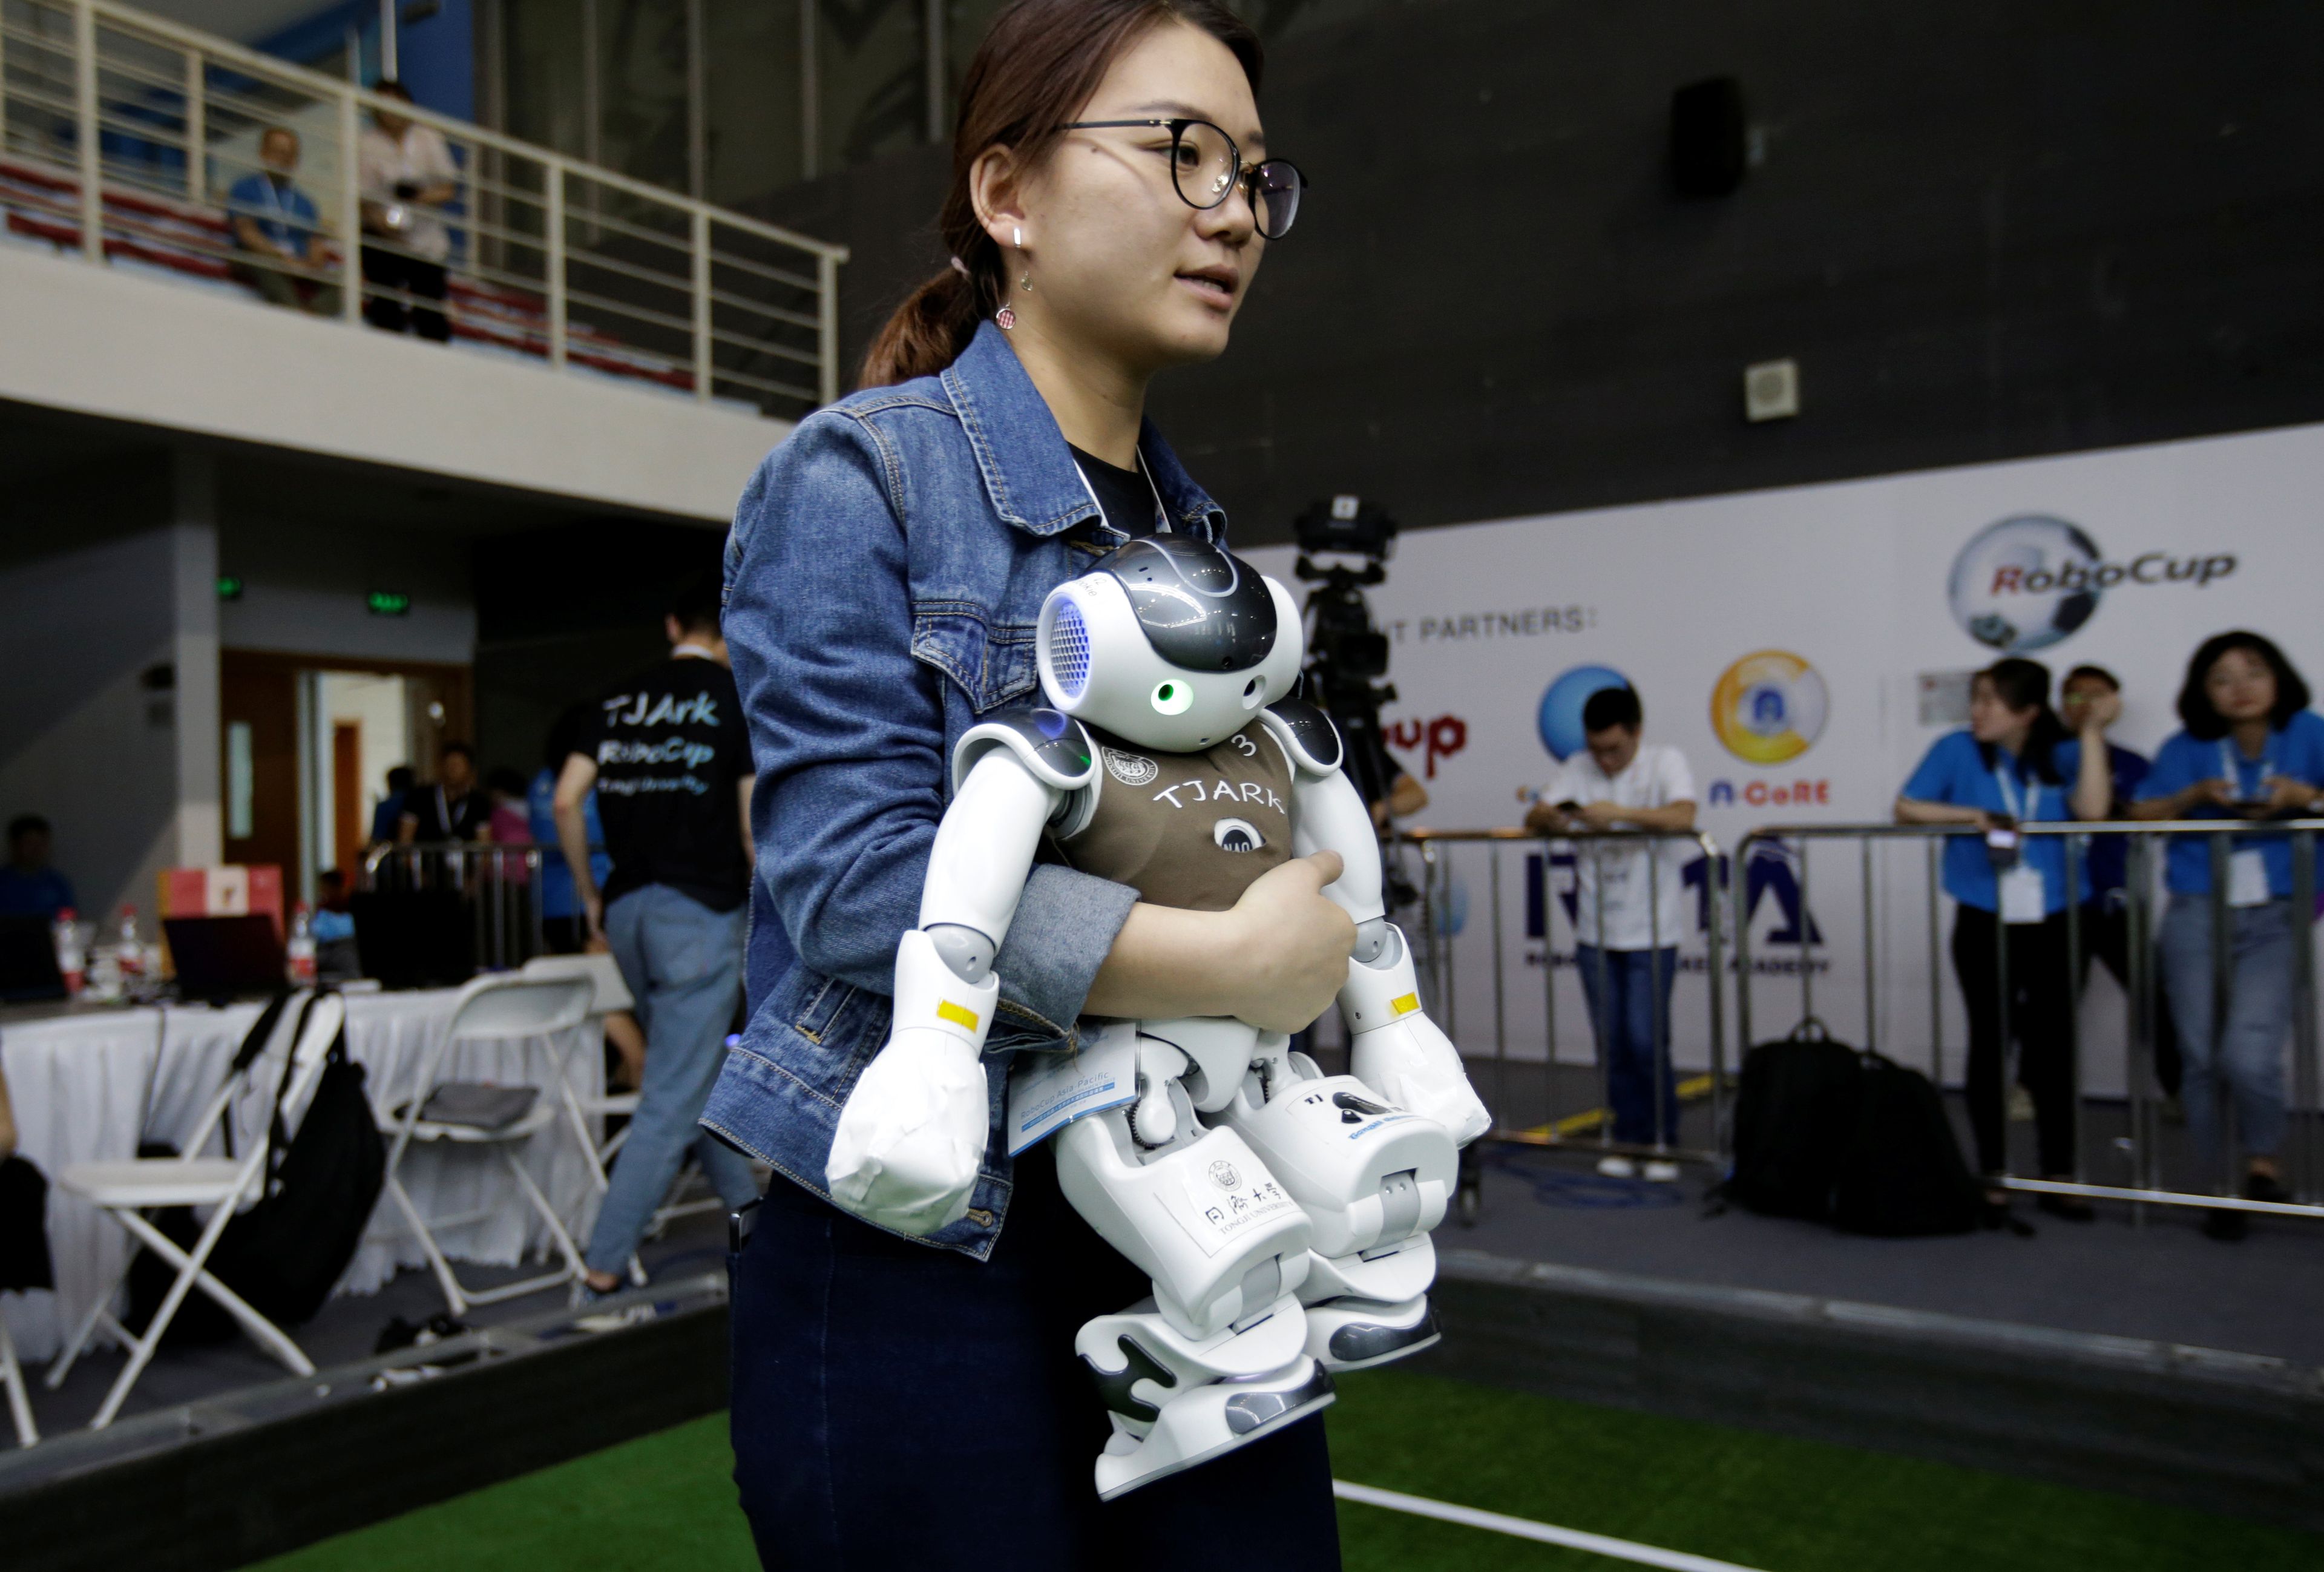 Una joven lleva un robot en una competición de robots.